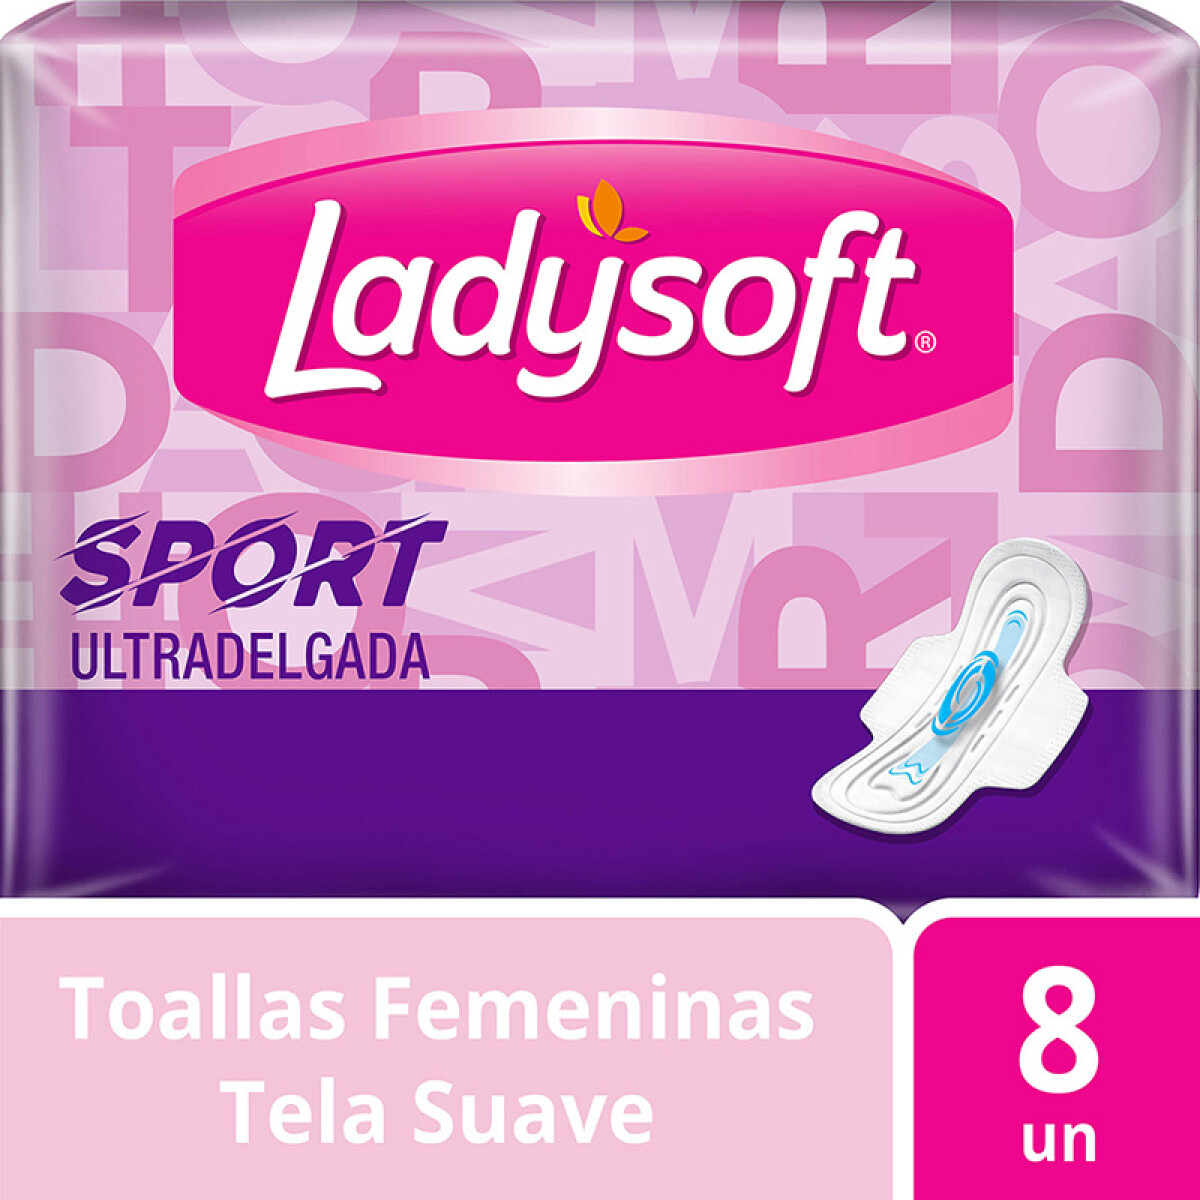 Ladysoft toalla - Sport ultradelgada x8 